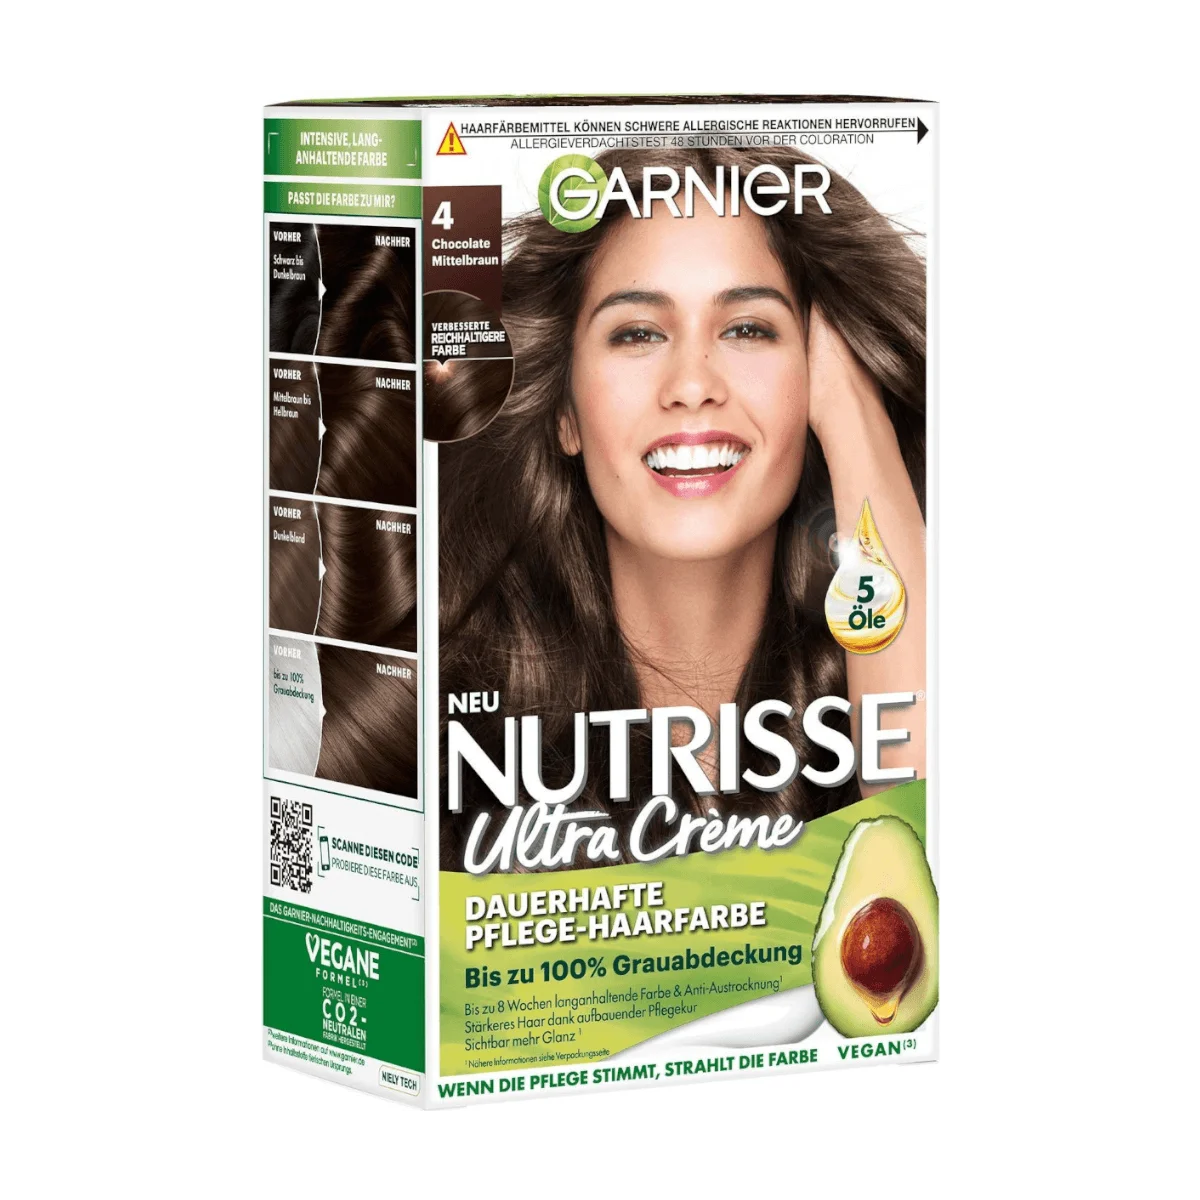 Garnier Nutrisse Ultra Creme Haarfarbe 4 Chocolate Mittelbraun, 1 Stk